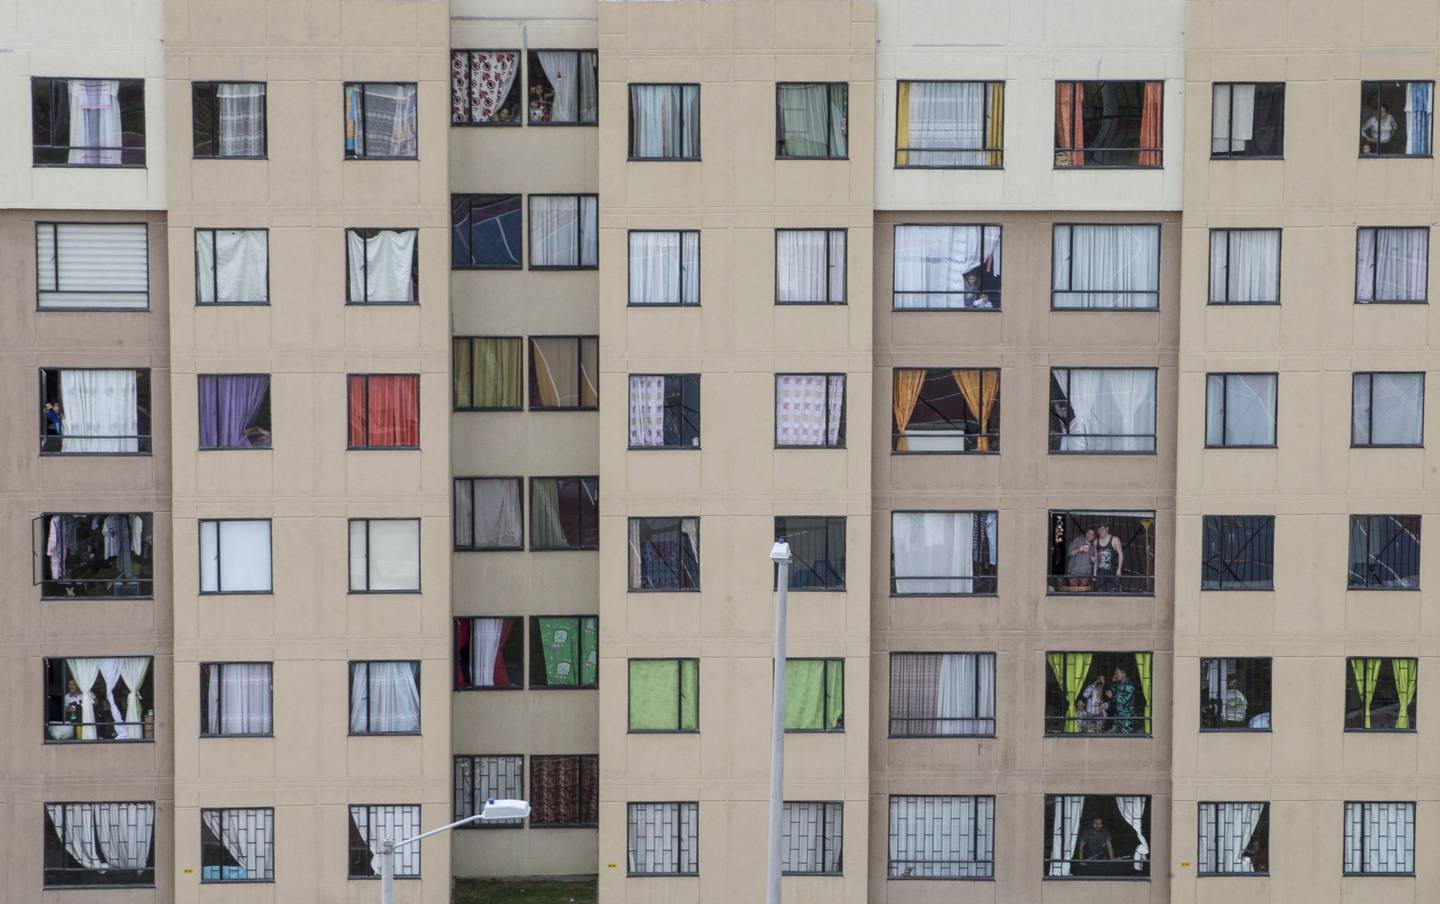 Los residentes observan desde las ventanas de sus casas en esta fotografía aérea tomada desde un helicóptero en Bogotá, Colombia, el martes 7 de abril de 2020.